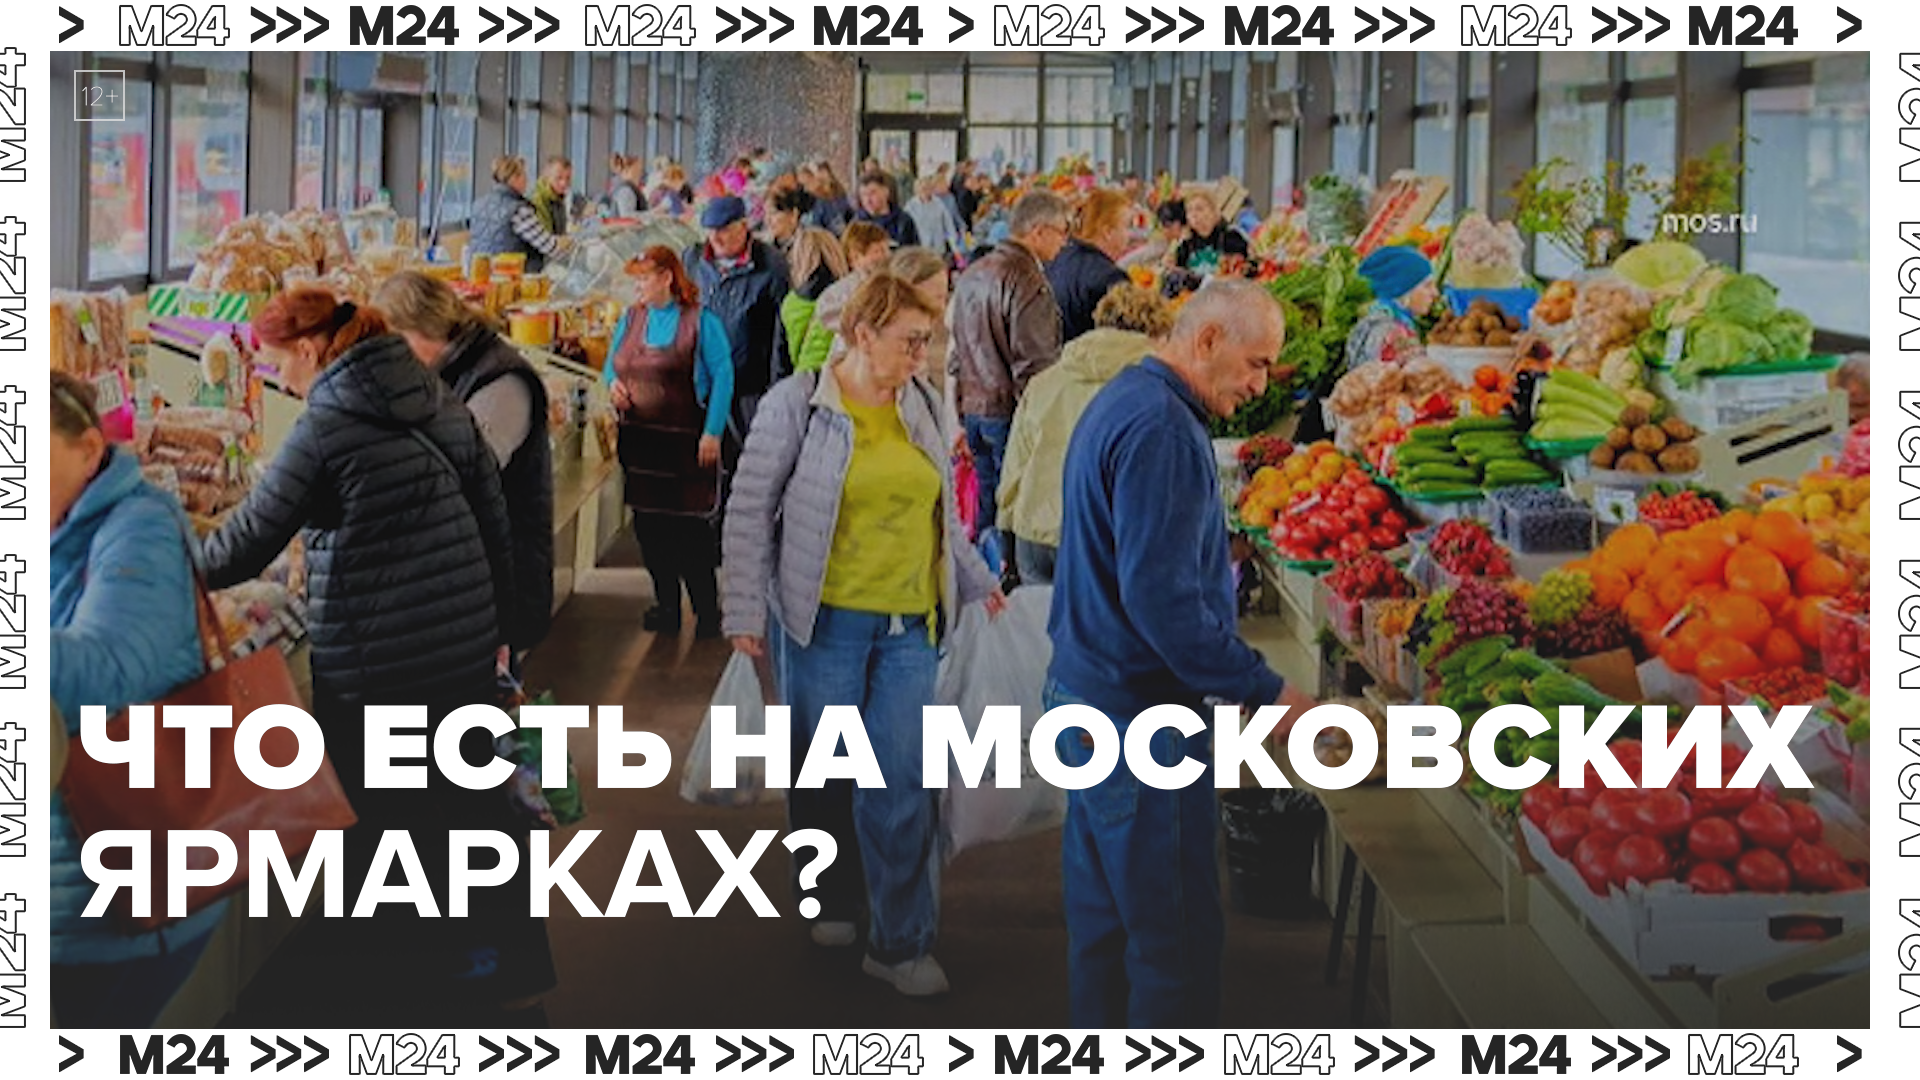 Что есть на московских ярмарках? — Москва24|Контент